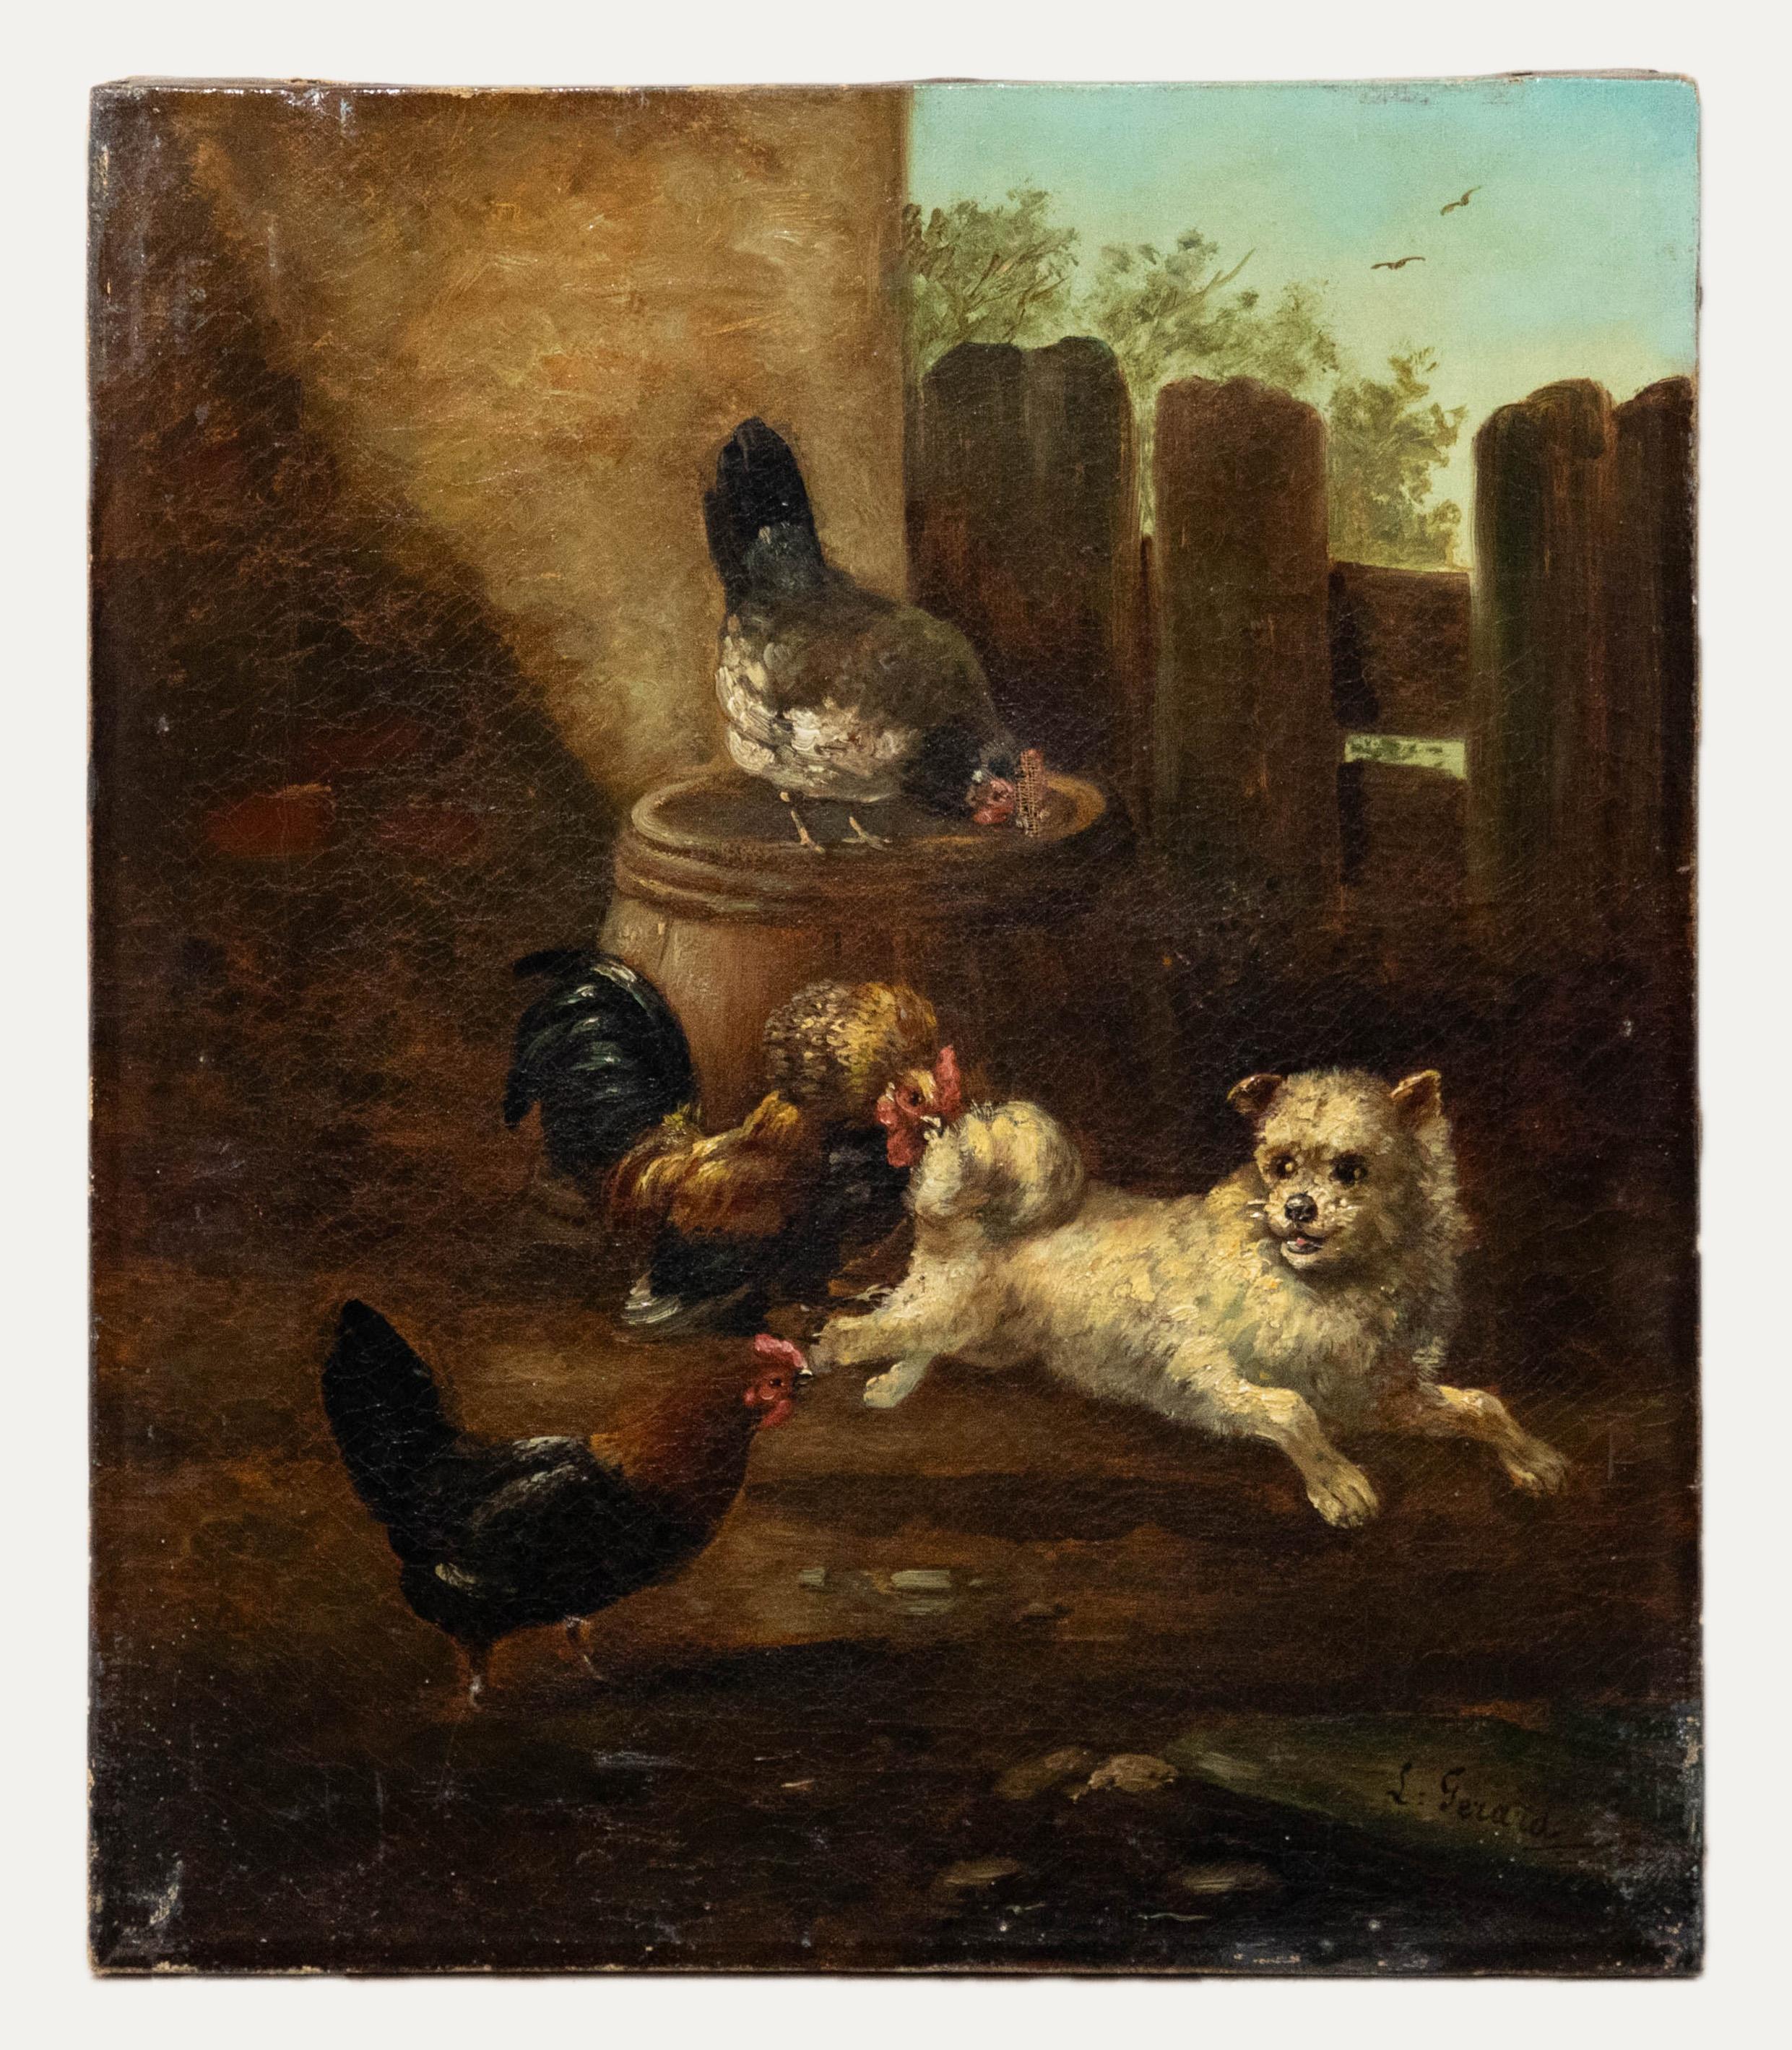 Follower of August Laux (1847-1921) - Ölgemälde, Terrier Chase, spätes 19. Jahrhundert – Painting von Unknown